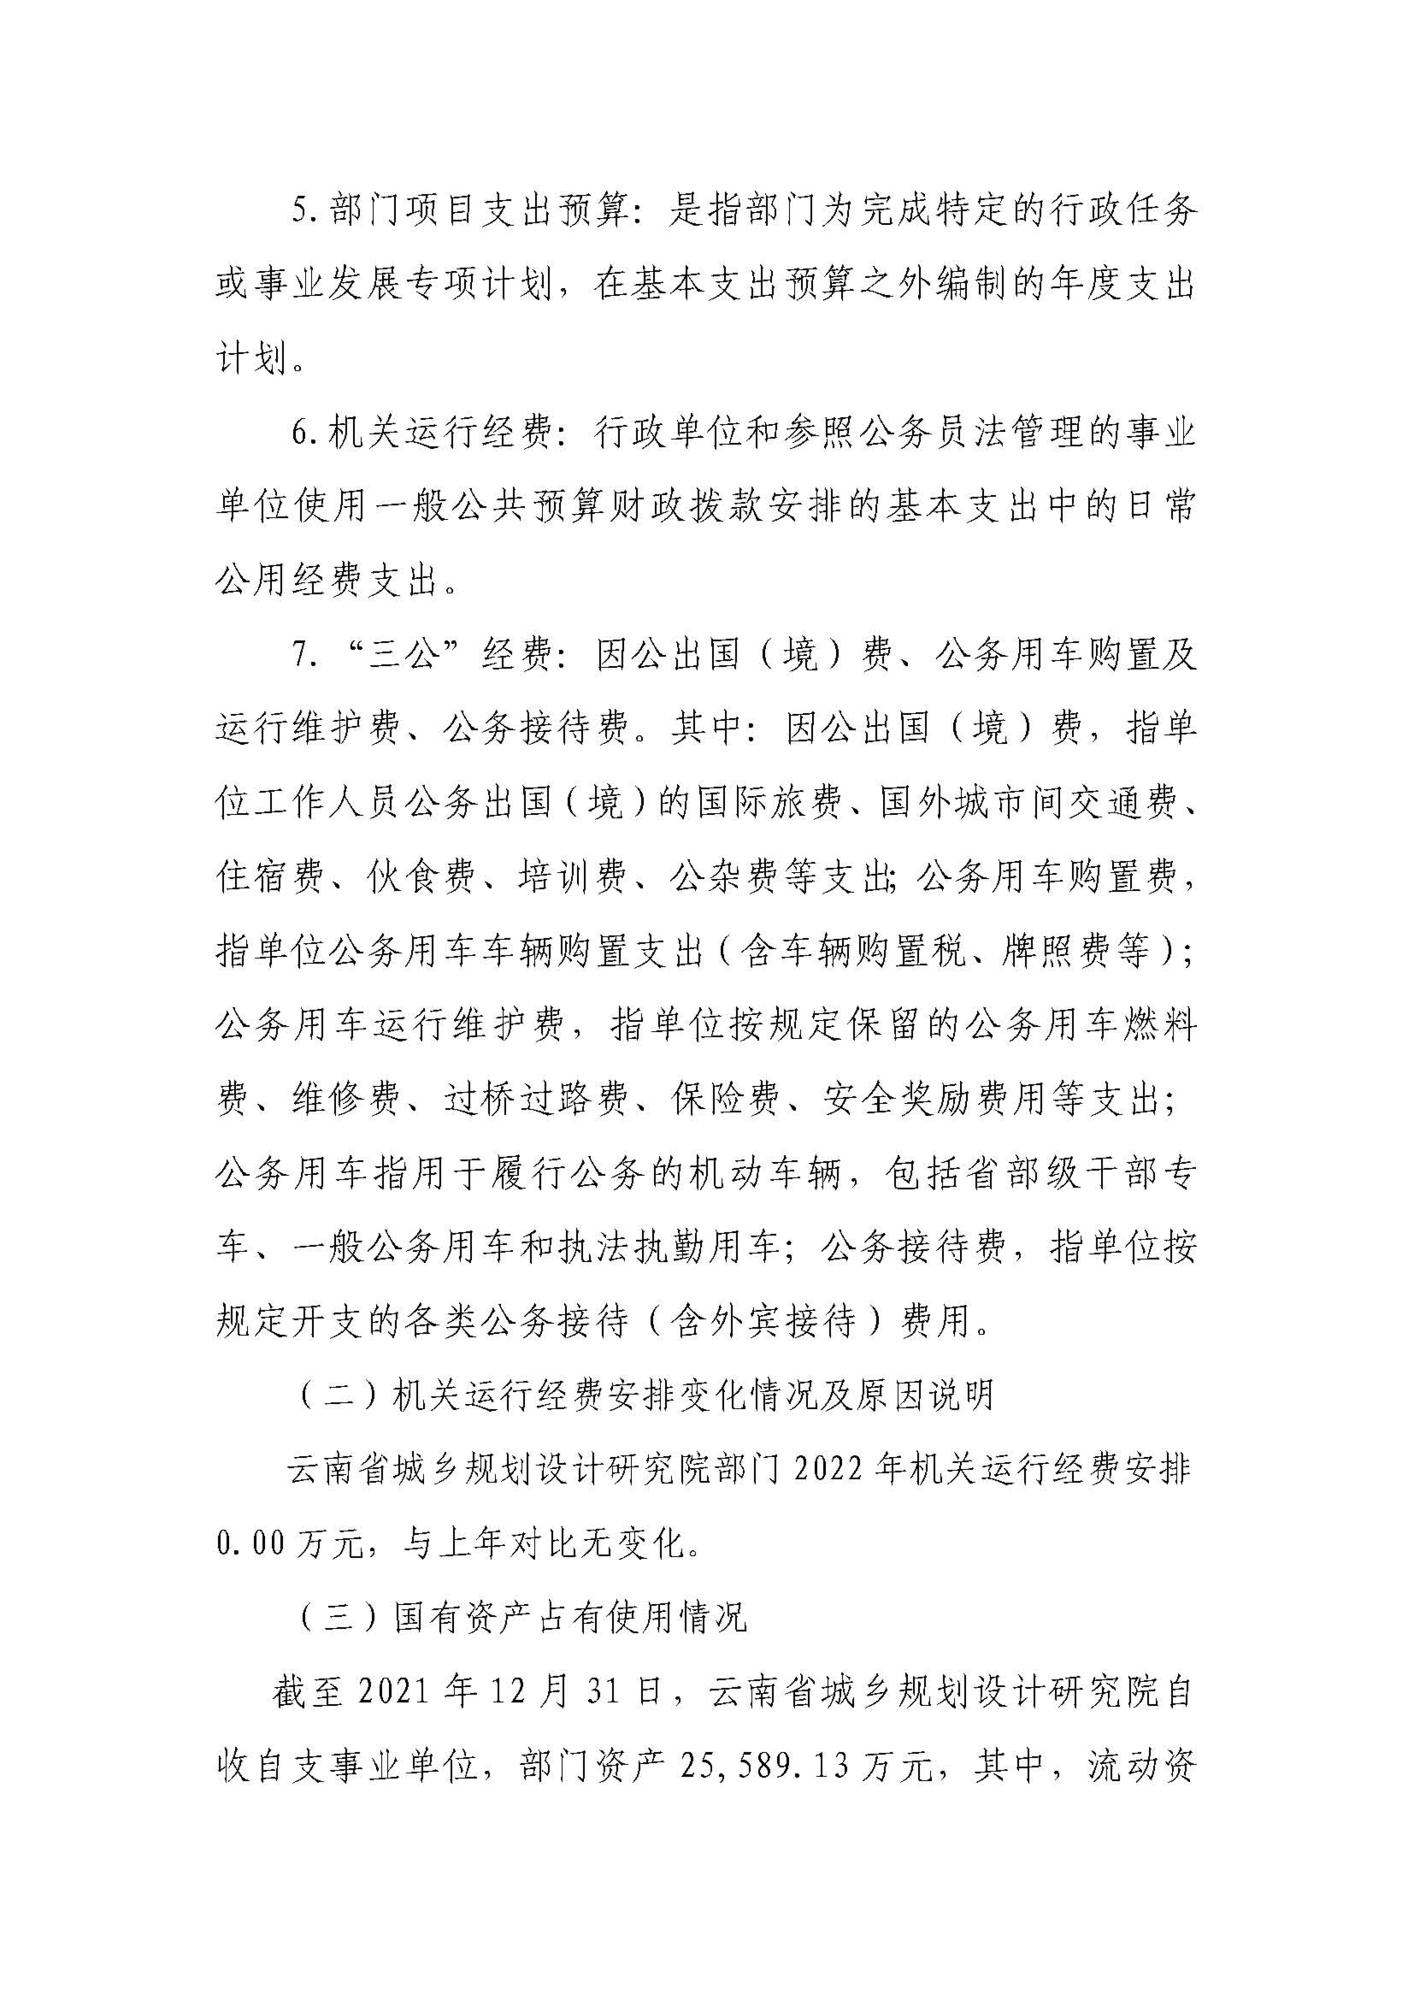 云南省城乡规划设计研究院（预算公开说明）_页面_10.jpg